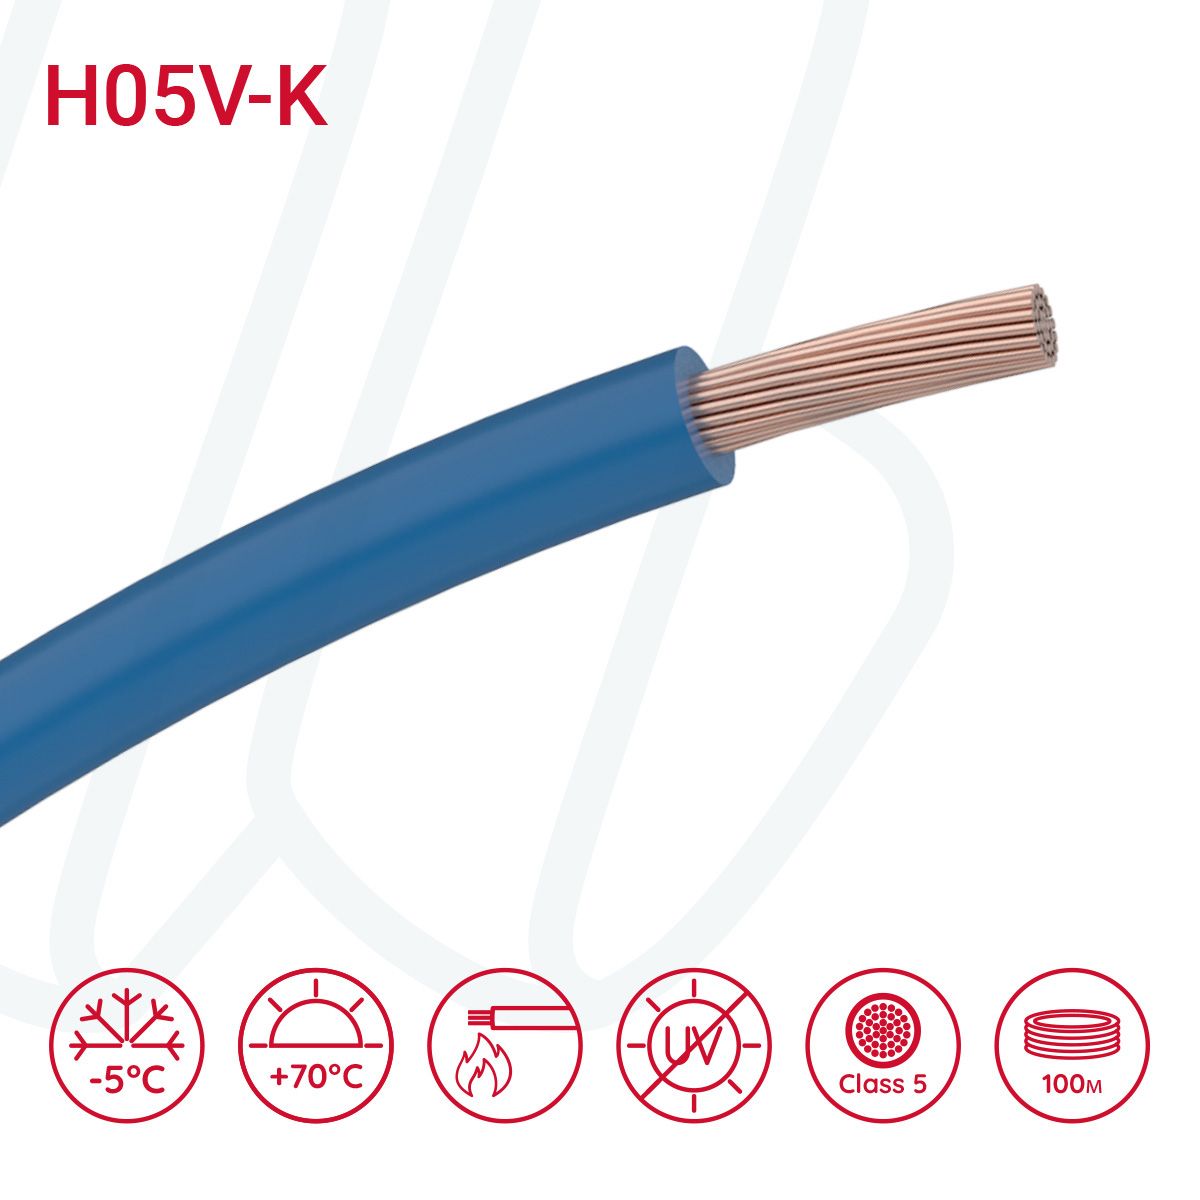 Провід монтажний гнучкий H05V-K 0.5 мм² темно-синій RAL 5010, 01, 0.5